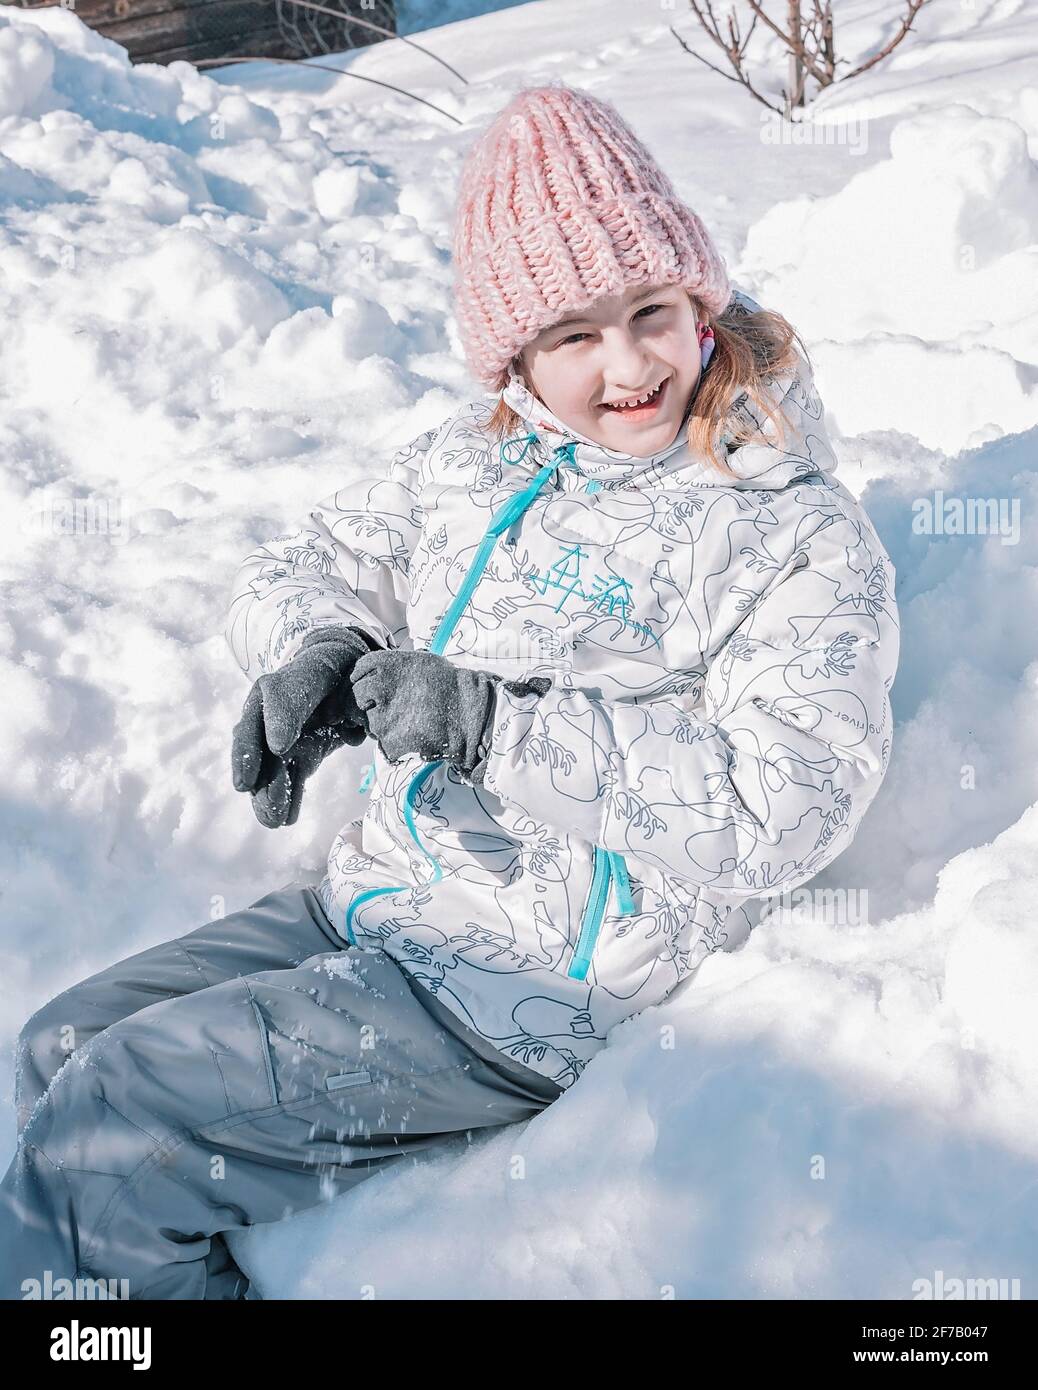 Jolie fille souriante dans des vêtements chauds est assise dans une banque de neige. Un enfant s'amuse en hiver. Origine ethnique caucasienne, enfance heureuse, activité en plein air. Pour Banque D'Images